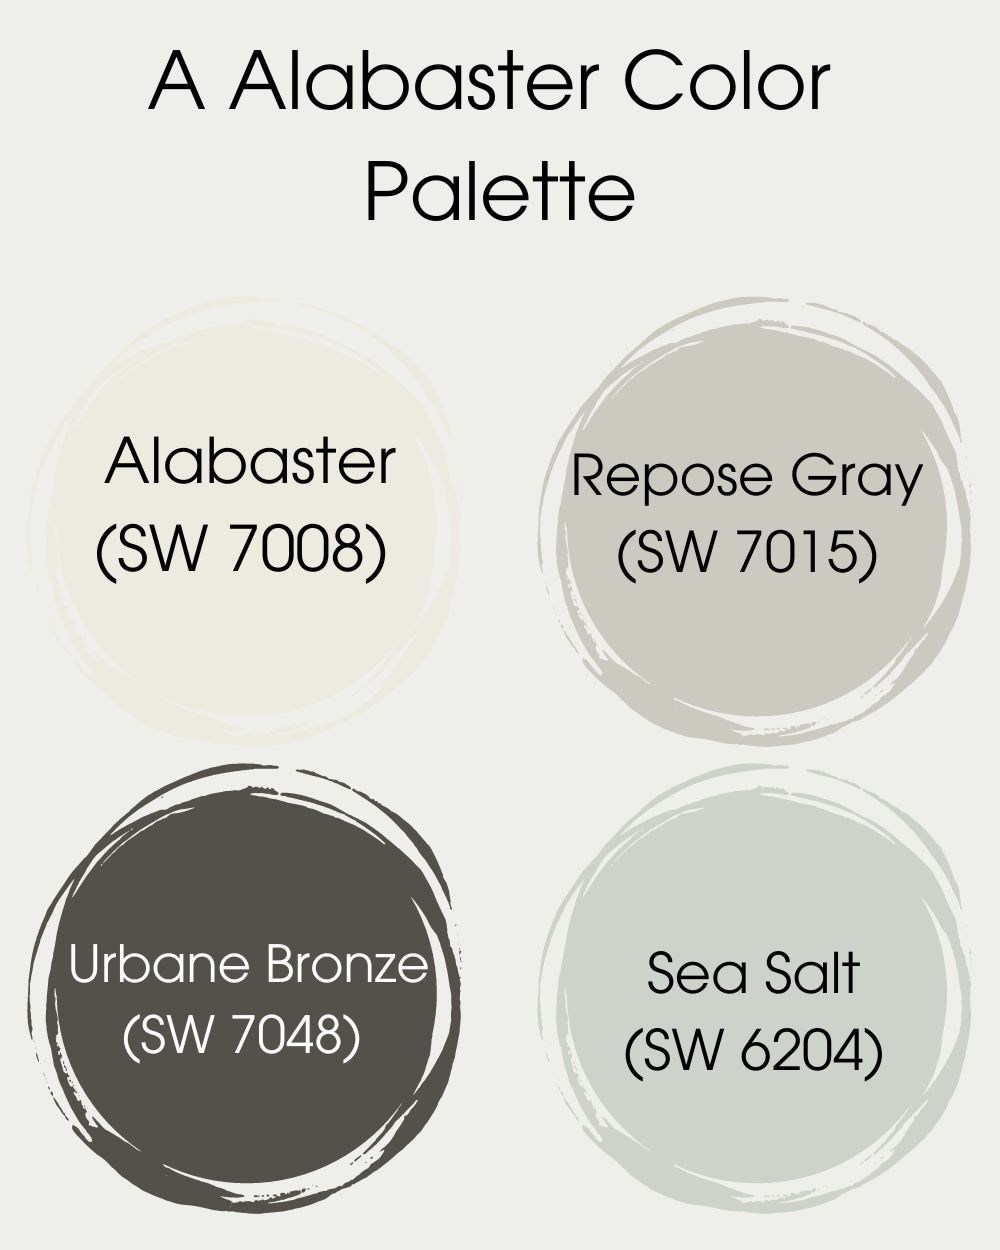 A Alabaster Color Palette